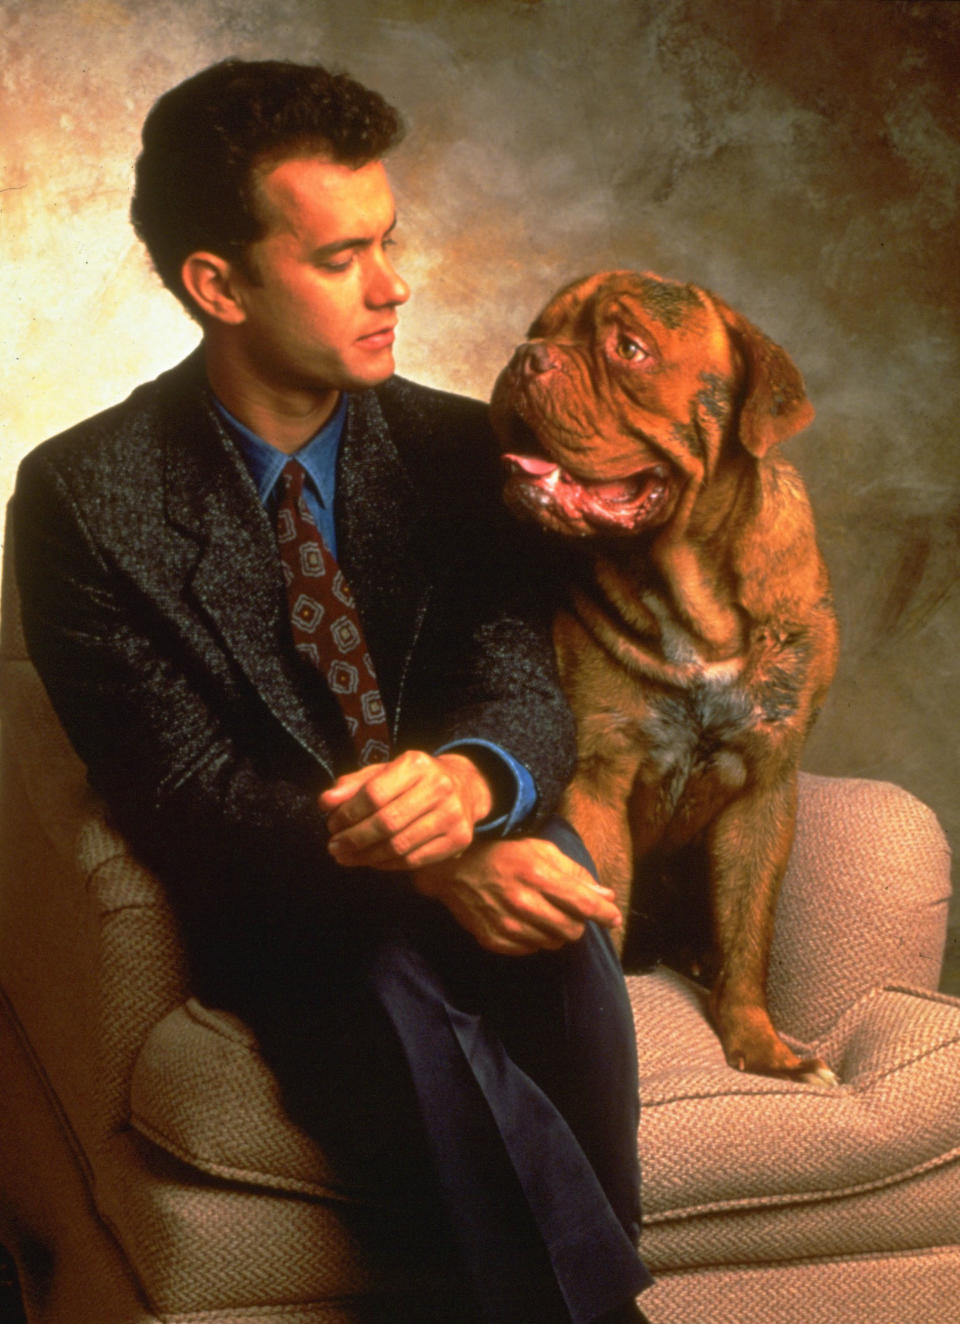 Turner and Hooch - 1989

Tom Hanks